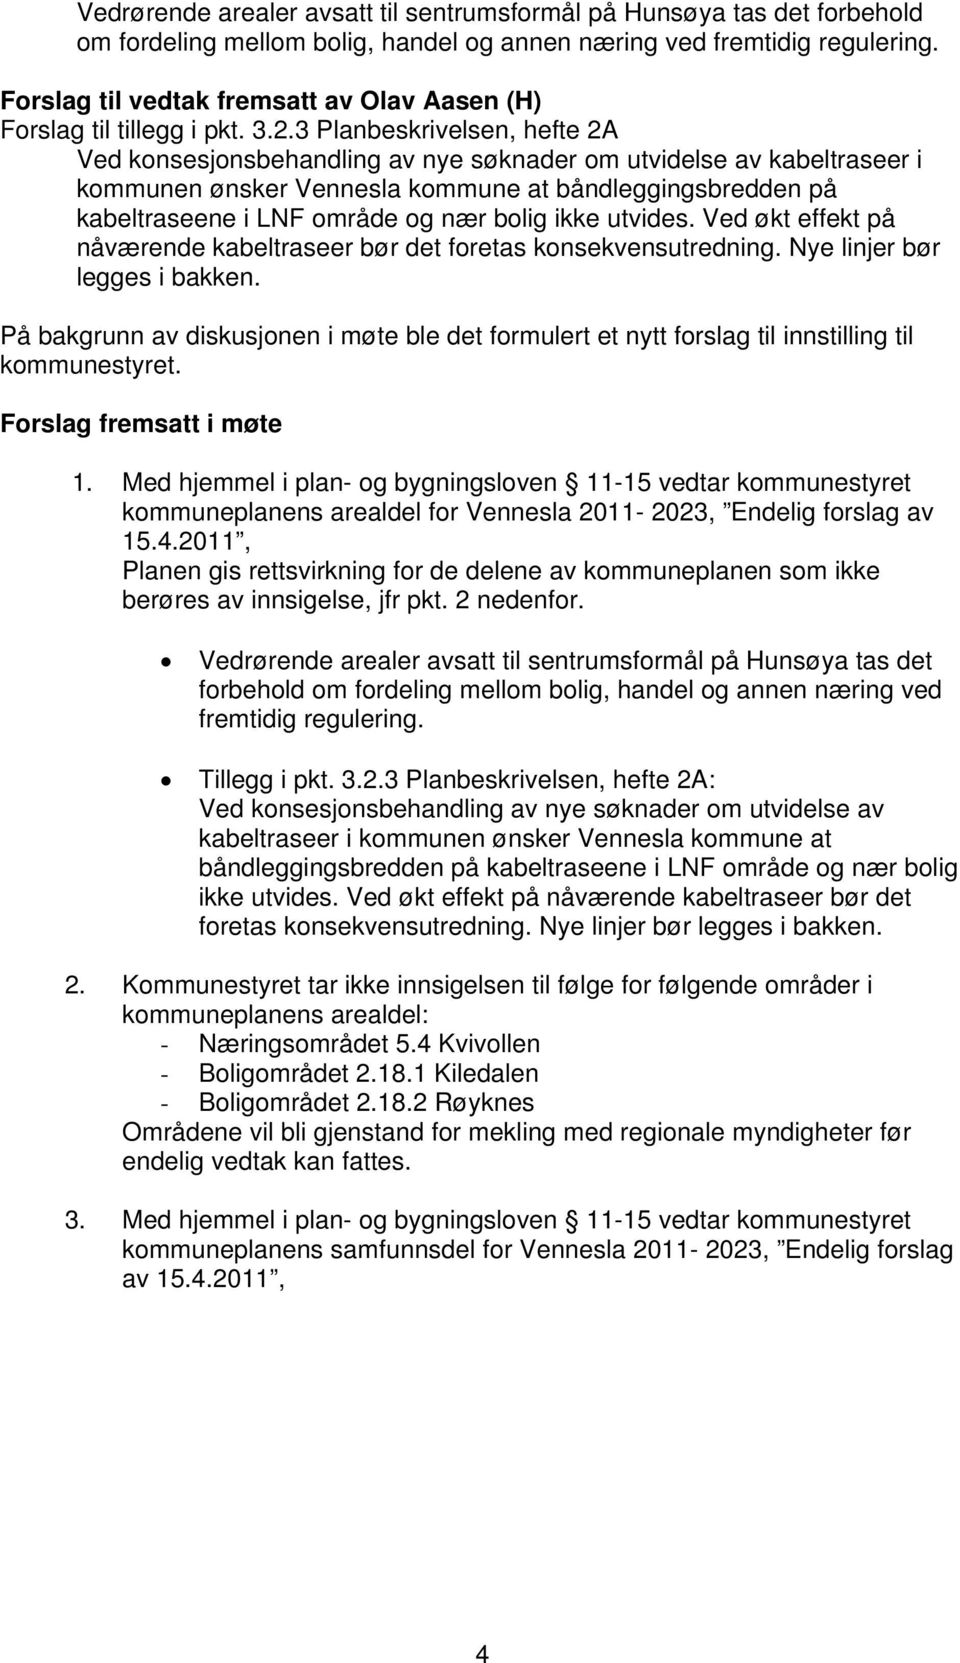 3 Planbeskrivelsen, hefte 2A Ved konsesjonsbehandling av nye søknader om utvidelse av kabeltraseer i kommunen ønsker Vennesla kommune at båndleggingsbredden på kabeltraseene i LNF område og nær bolig